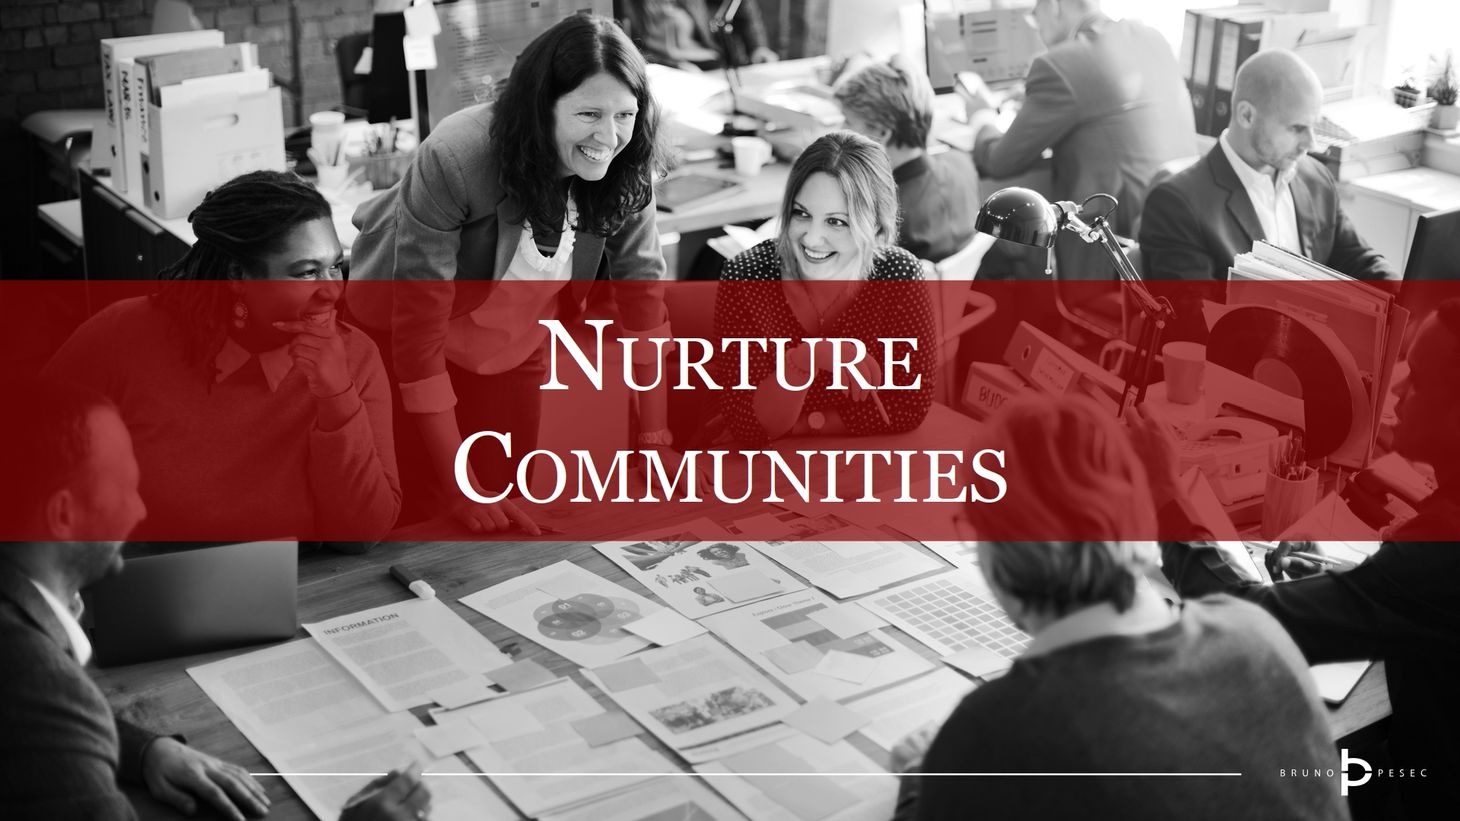 Nurture communities